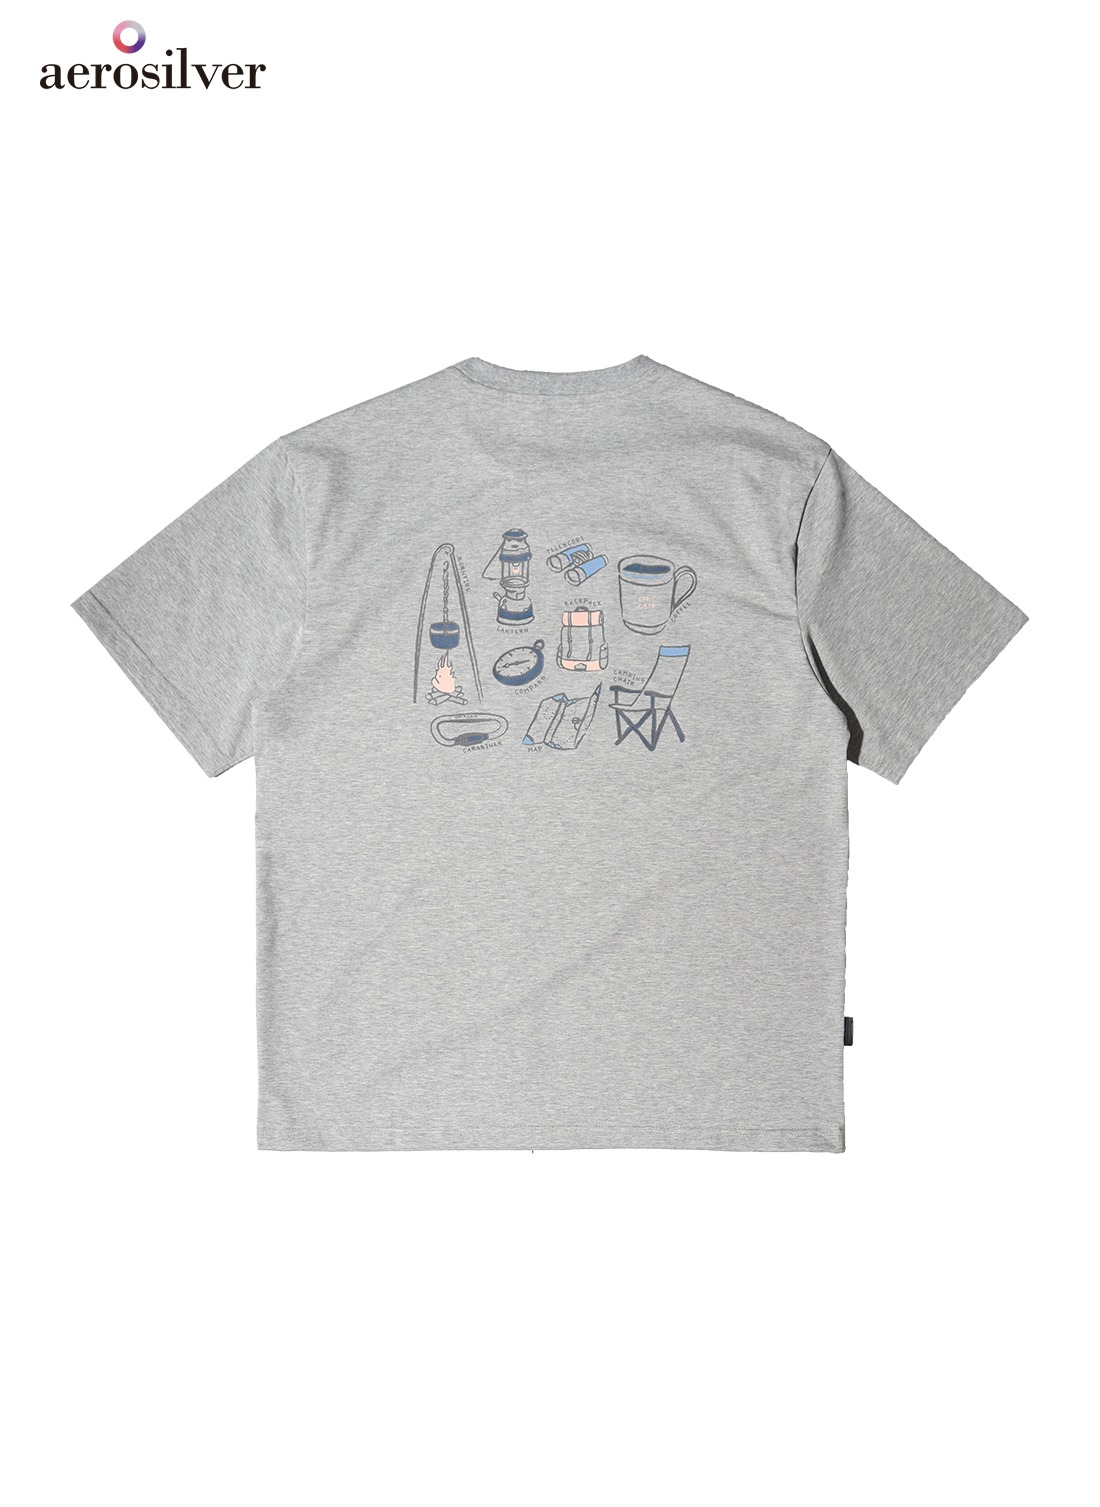 OHC 레디 투 캠프 그래픽 티셔츠-멜란지그레이